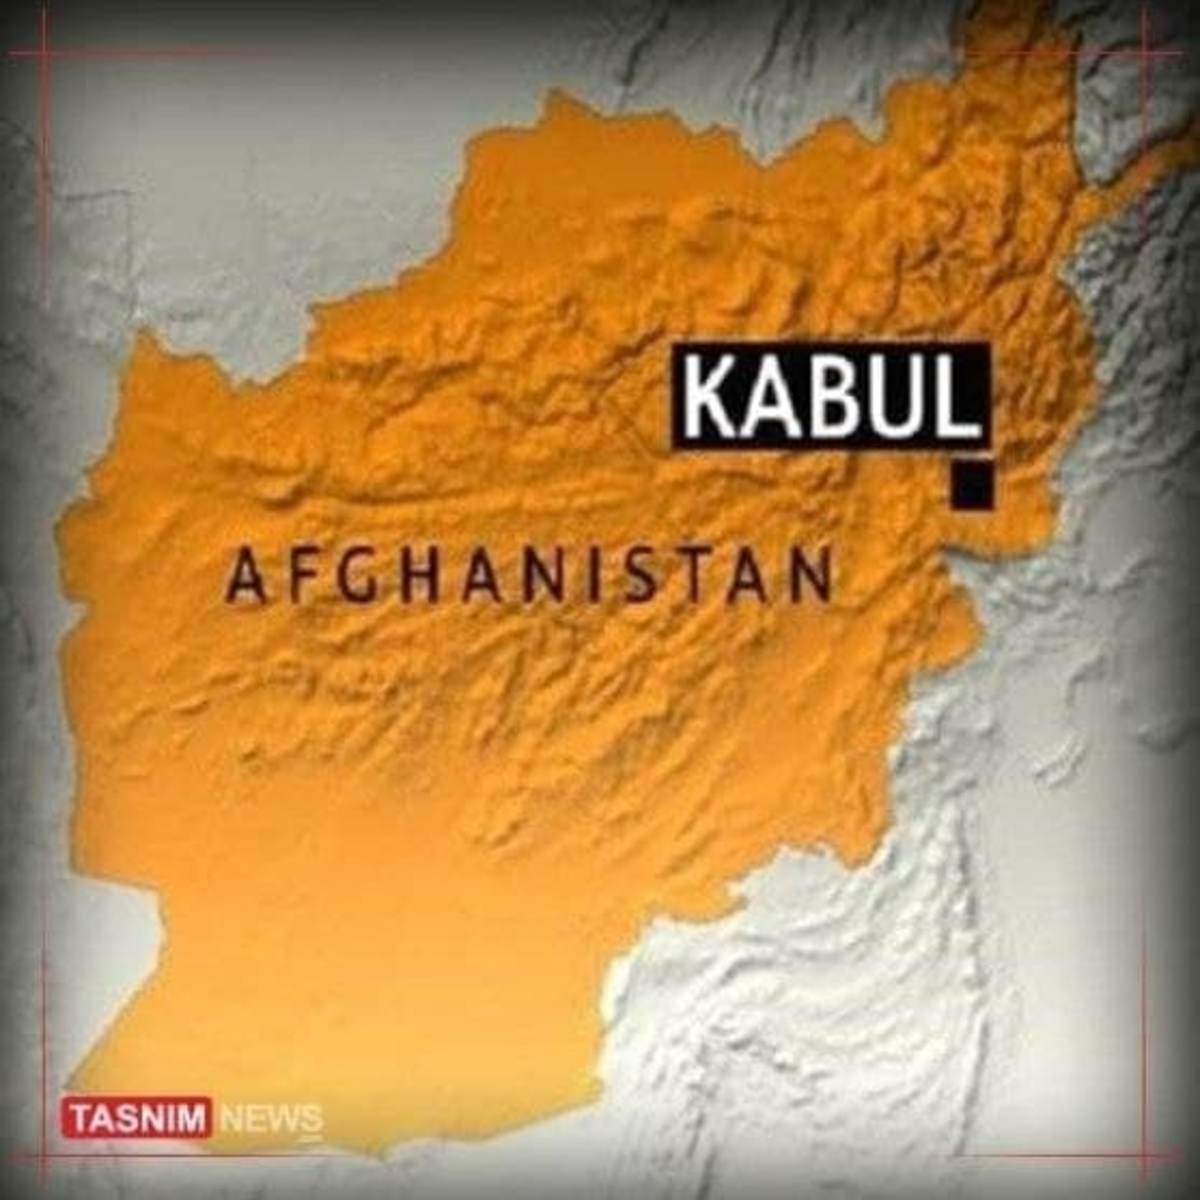 انفجار در نزدیکی سفارت روسیه در کابل